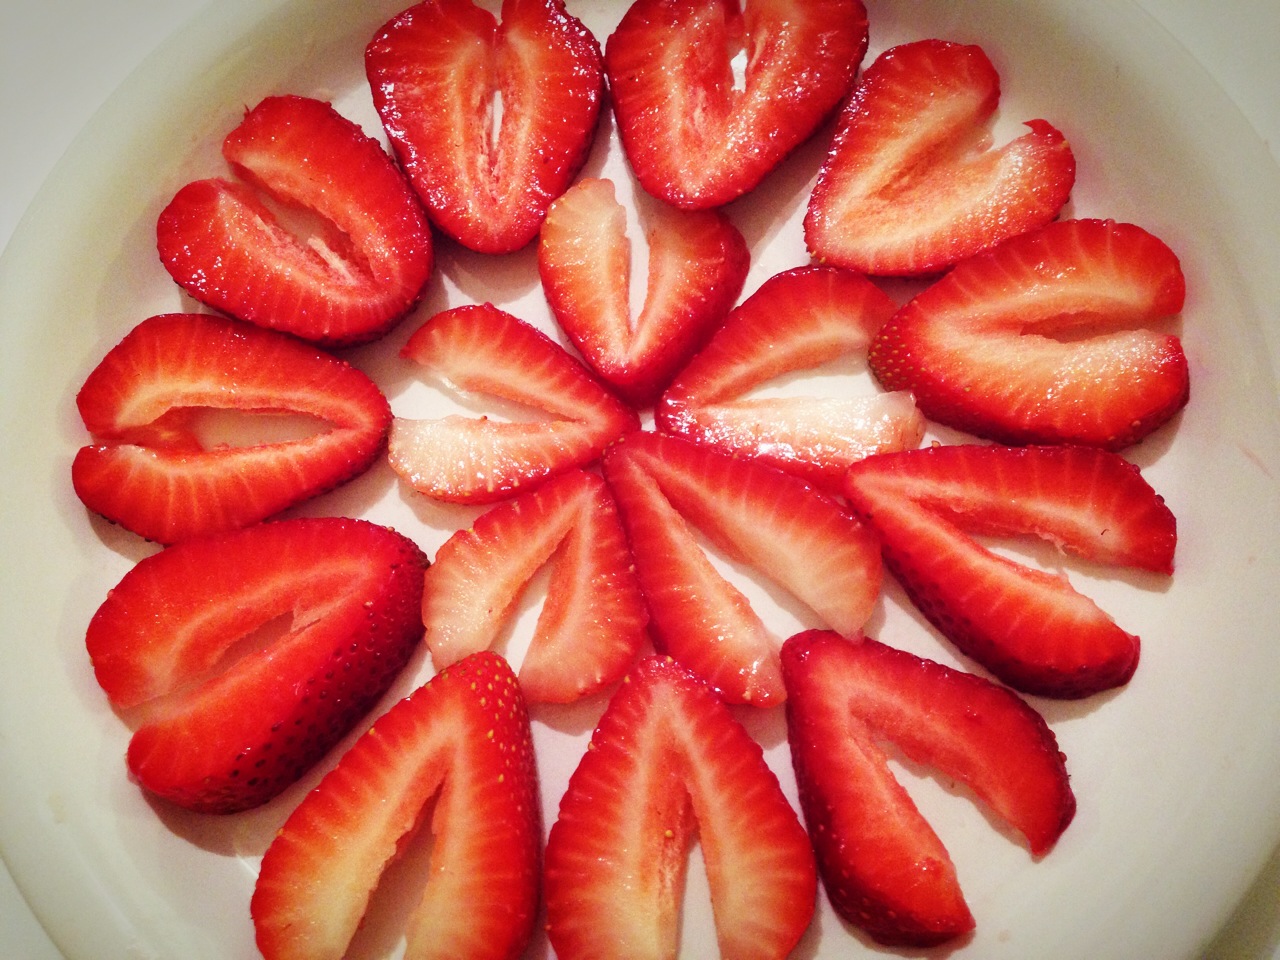 时一定都会想拿个食材来装饰一下,而草莓就是常常出现的装饰品之一!